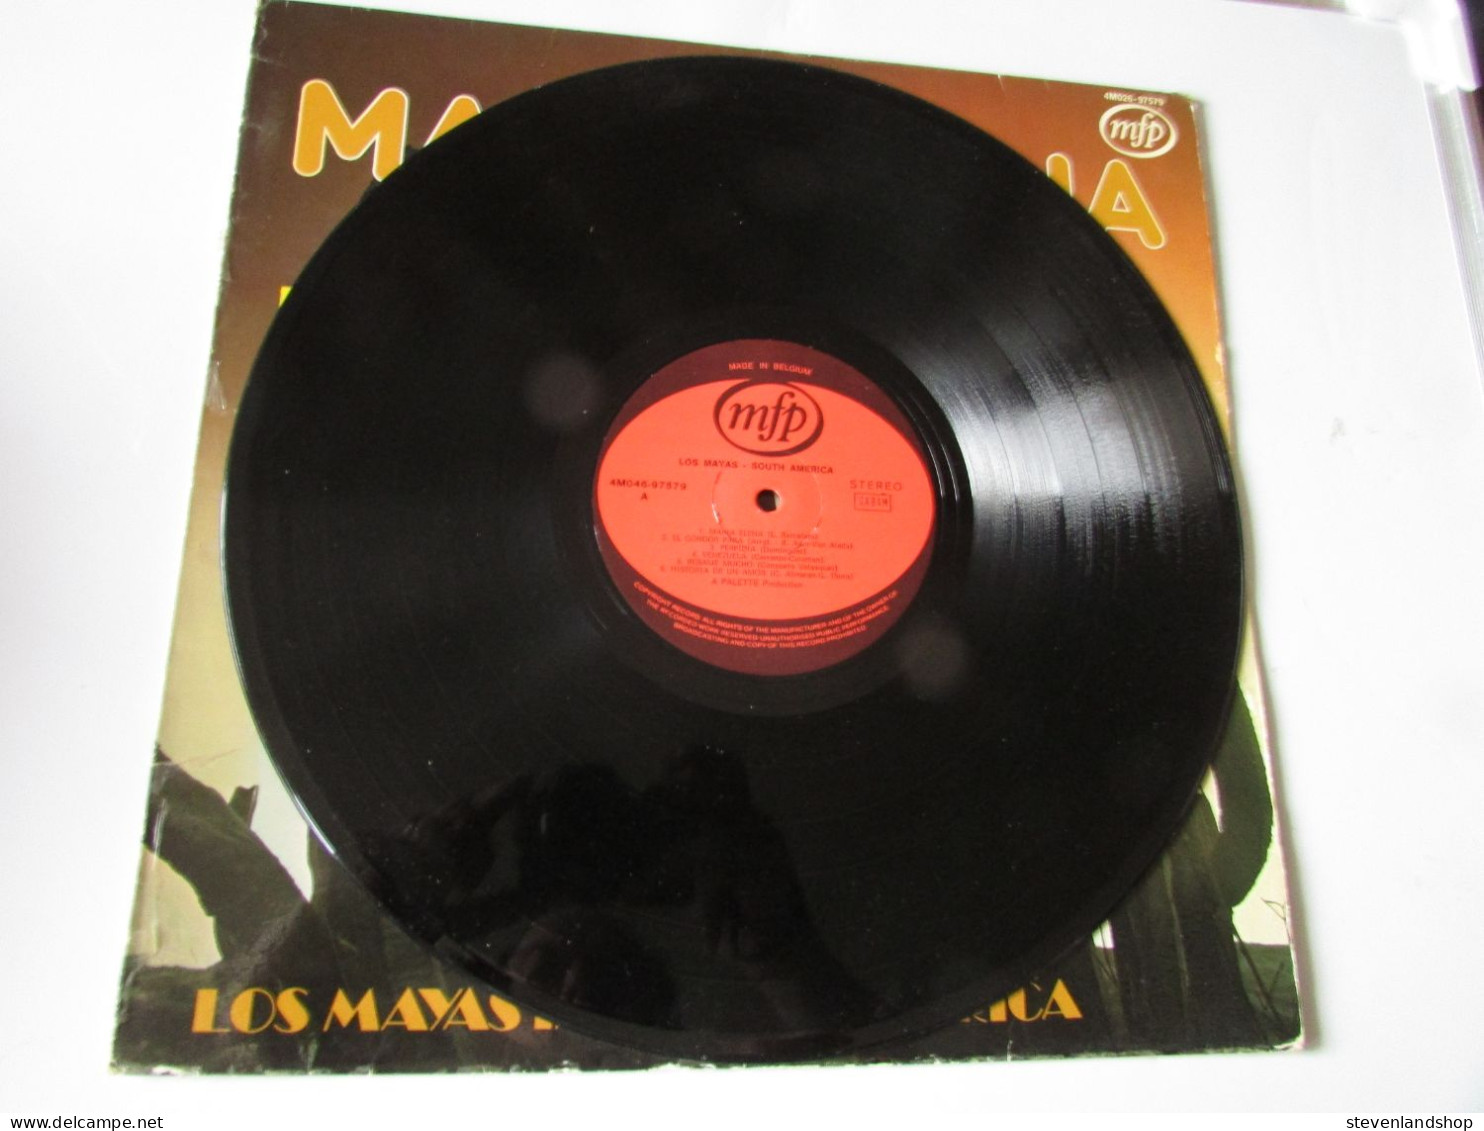 LOS MAYAS IN SOUTH - AMERICA, MARIA ELENA, LP - Autres - Musique Espagnole